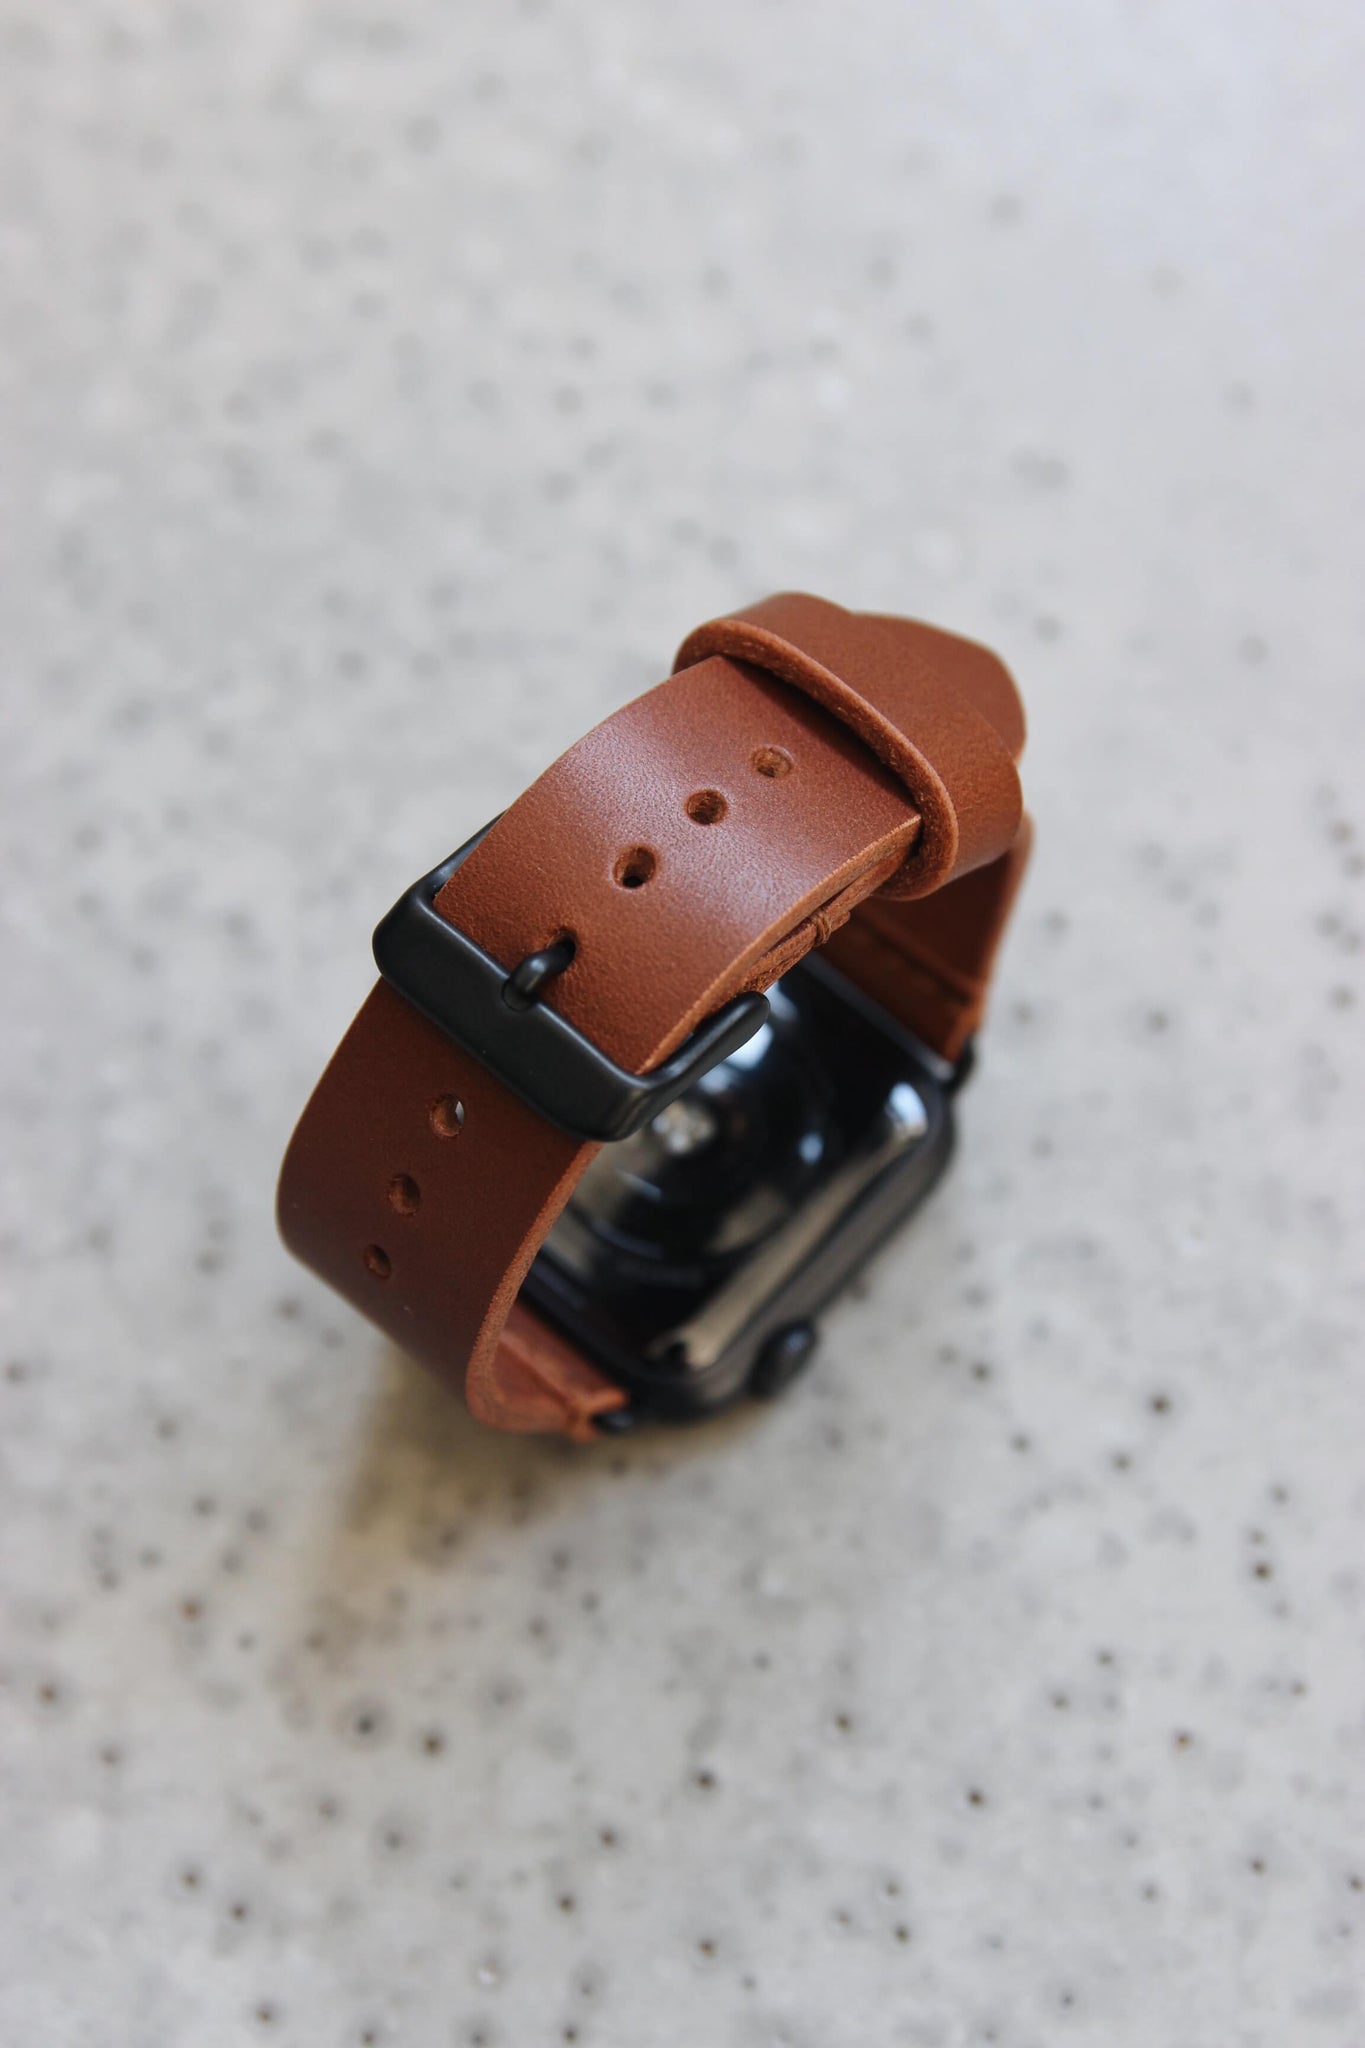 Eine Apple Watch mit einem Lederband in Braun auf einem Betonboden stehend.